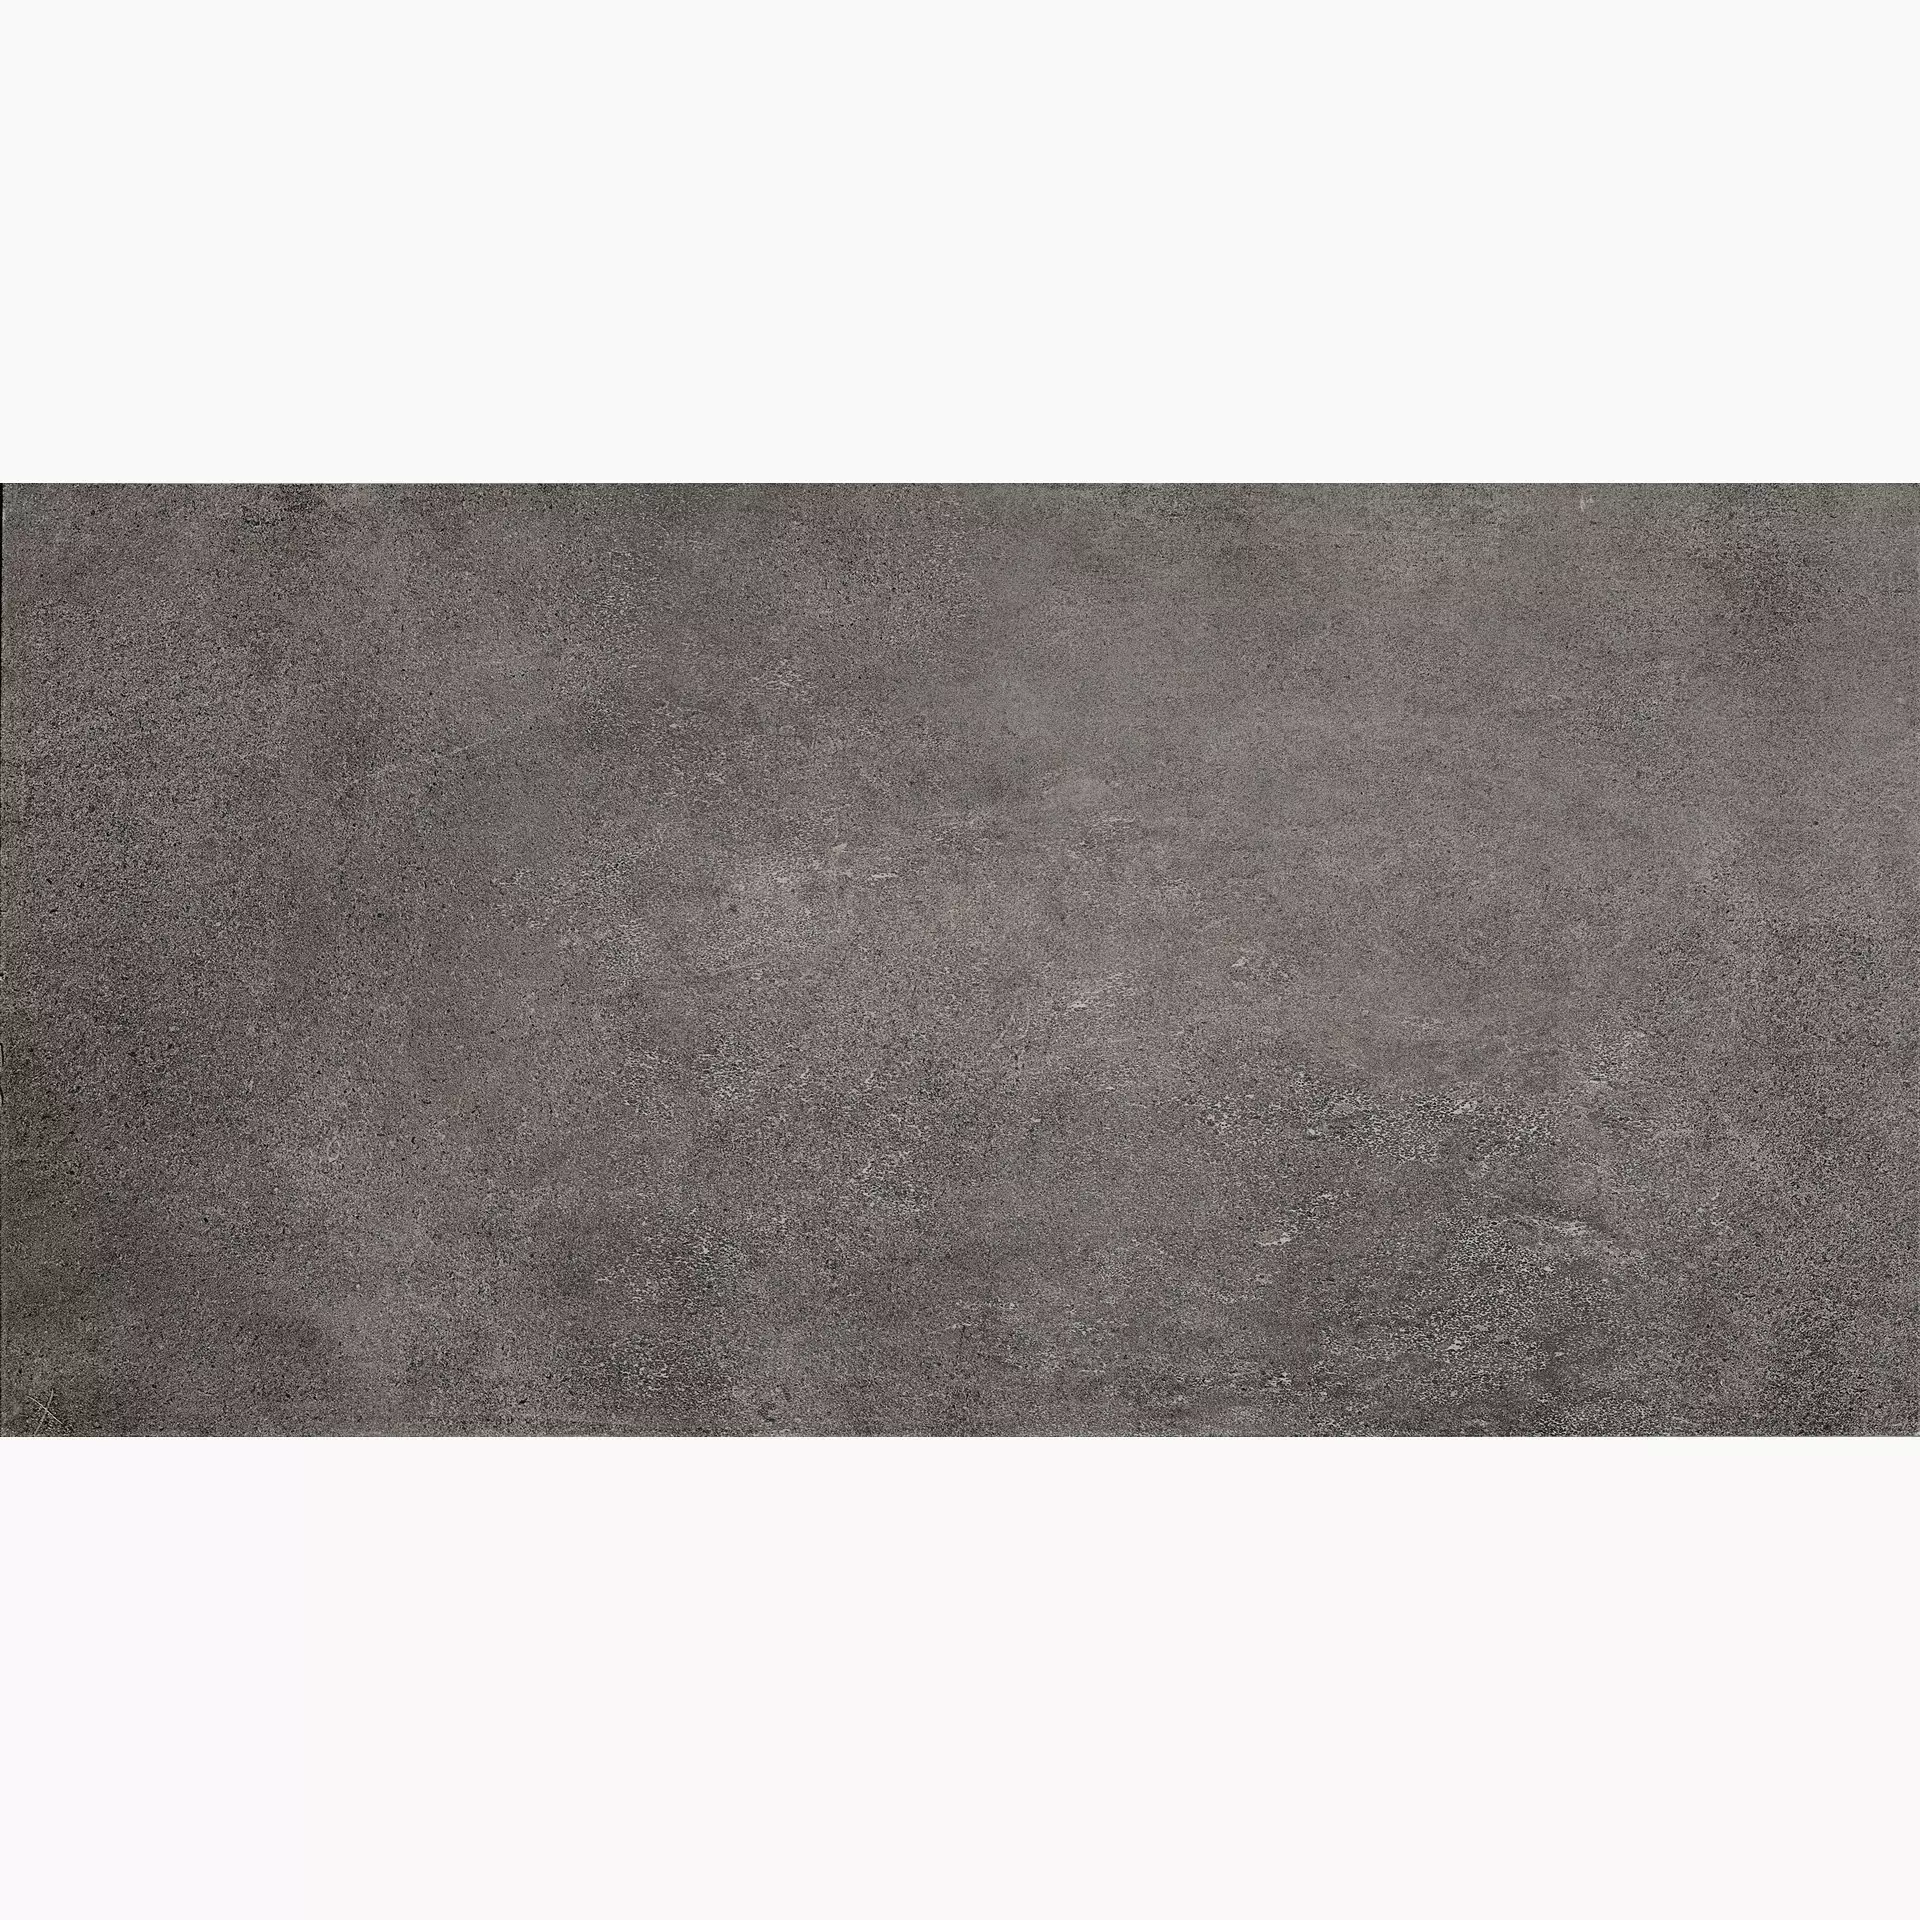 Casalgrande Cemento Antracite Rasato Antracite 3790162 30x60cm rektifiziert 10mm